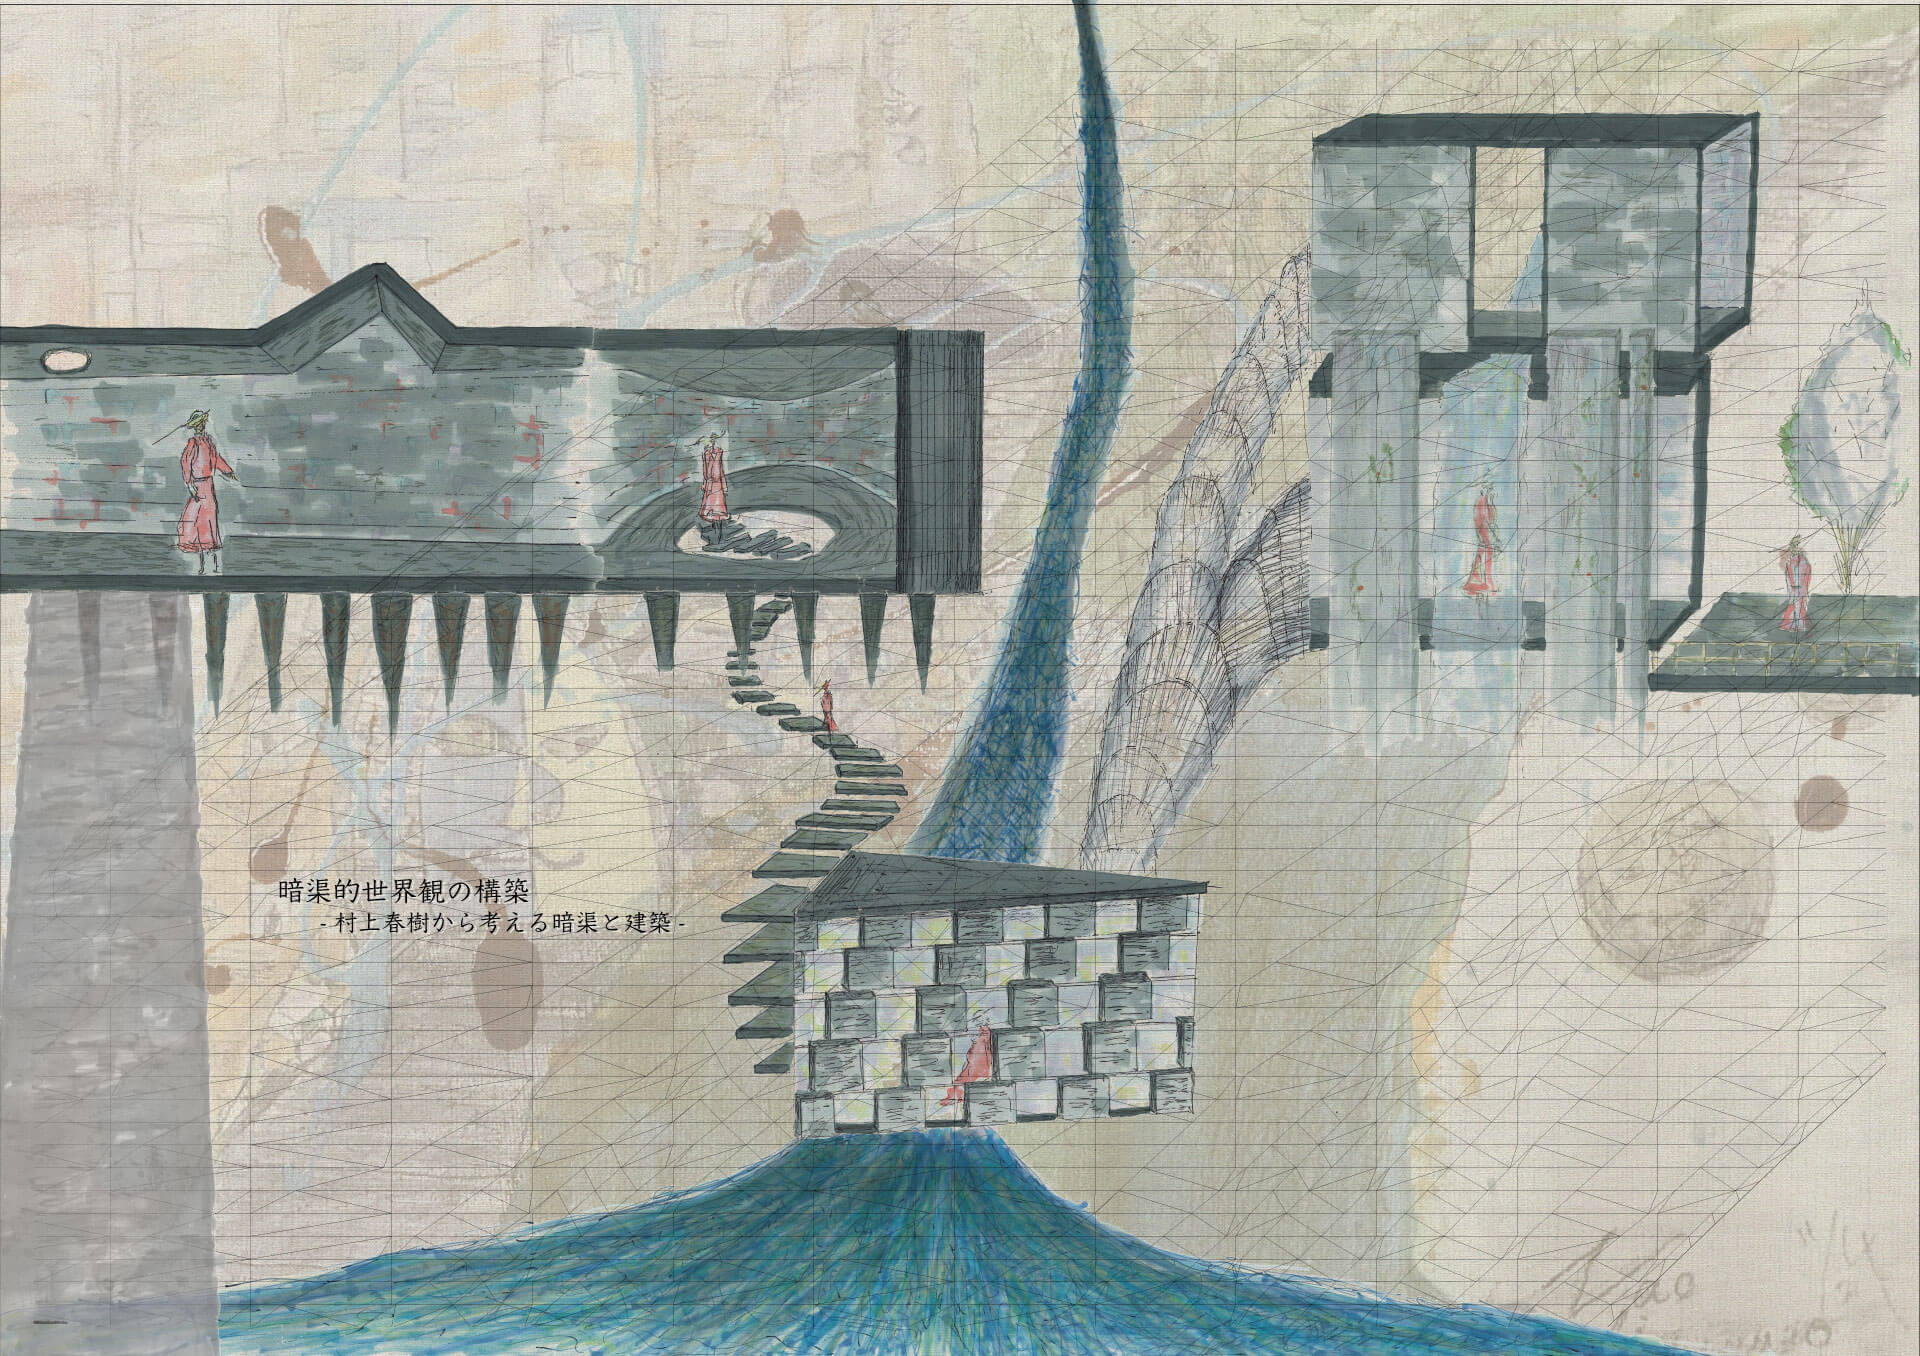 暗渠的世界観の構築－村上春樹作品から考える暗渠と建築-1